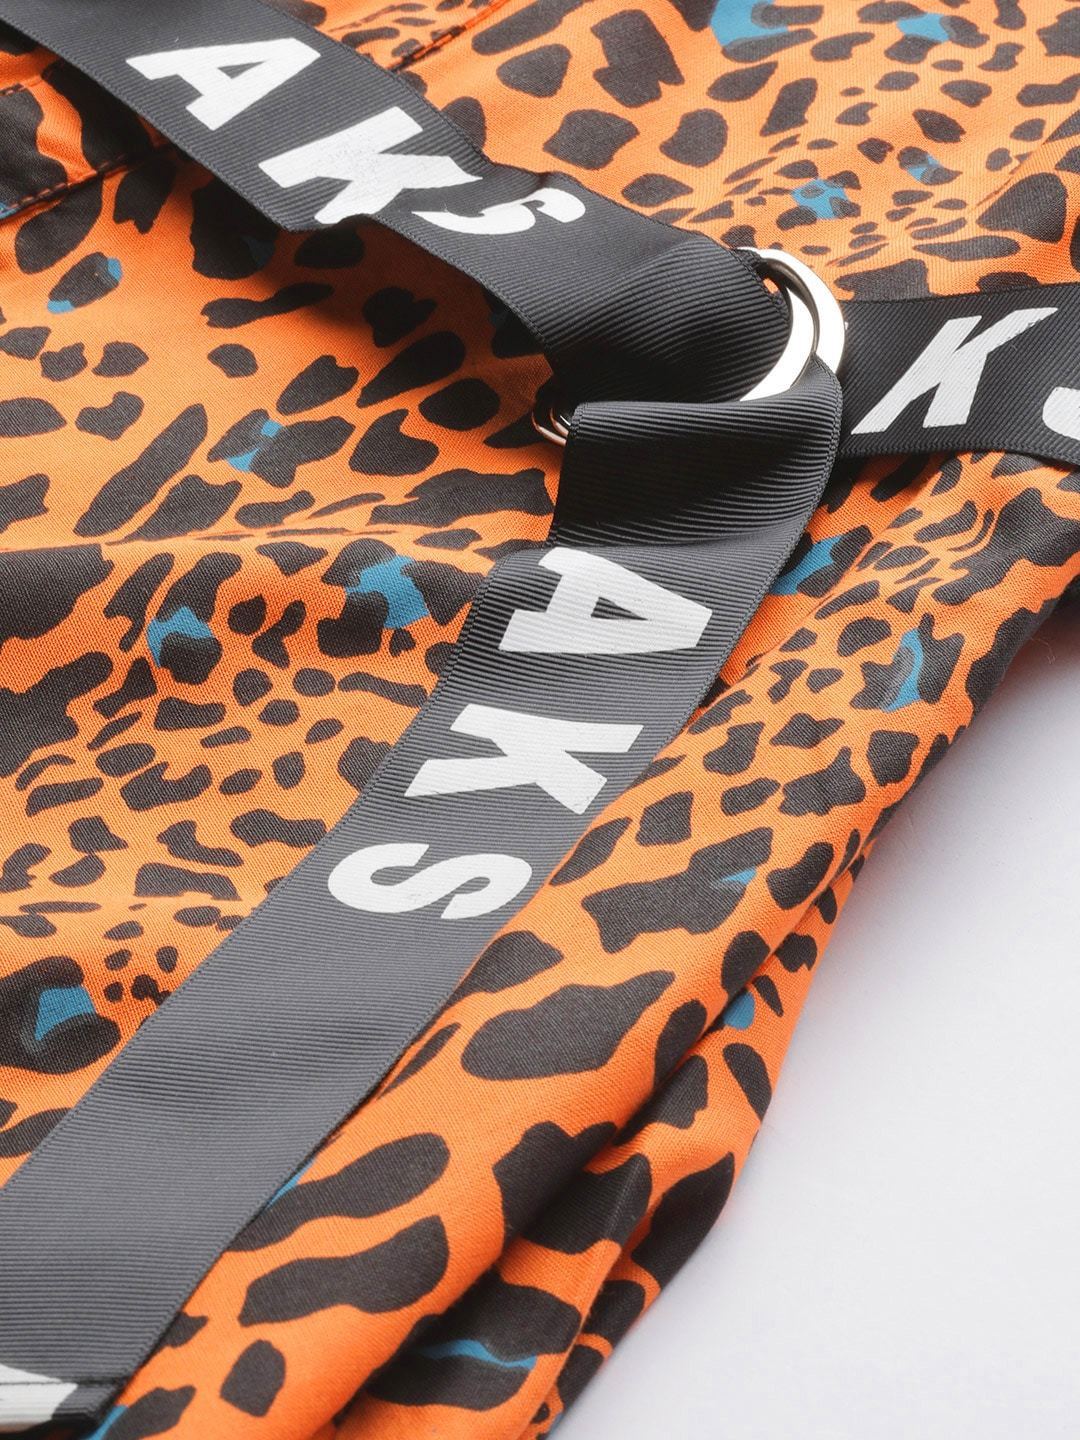 Women's  Orange & Black Animal Printed Maxi Dress - AKS